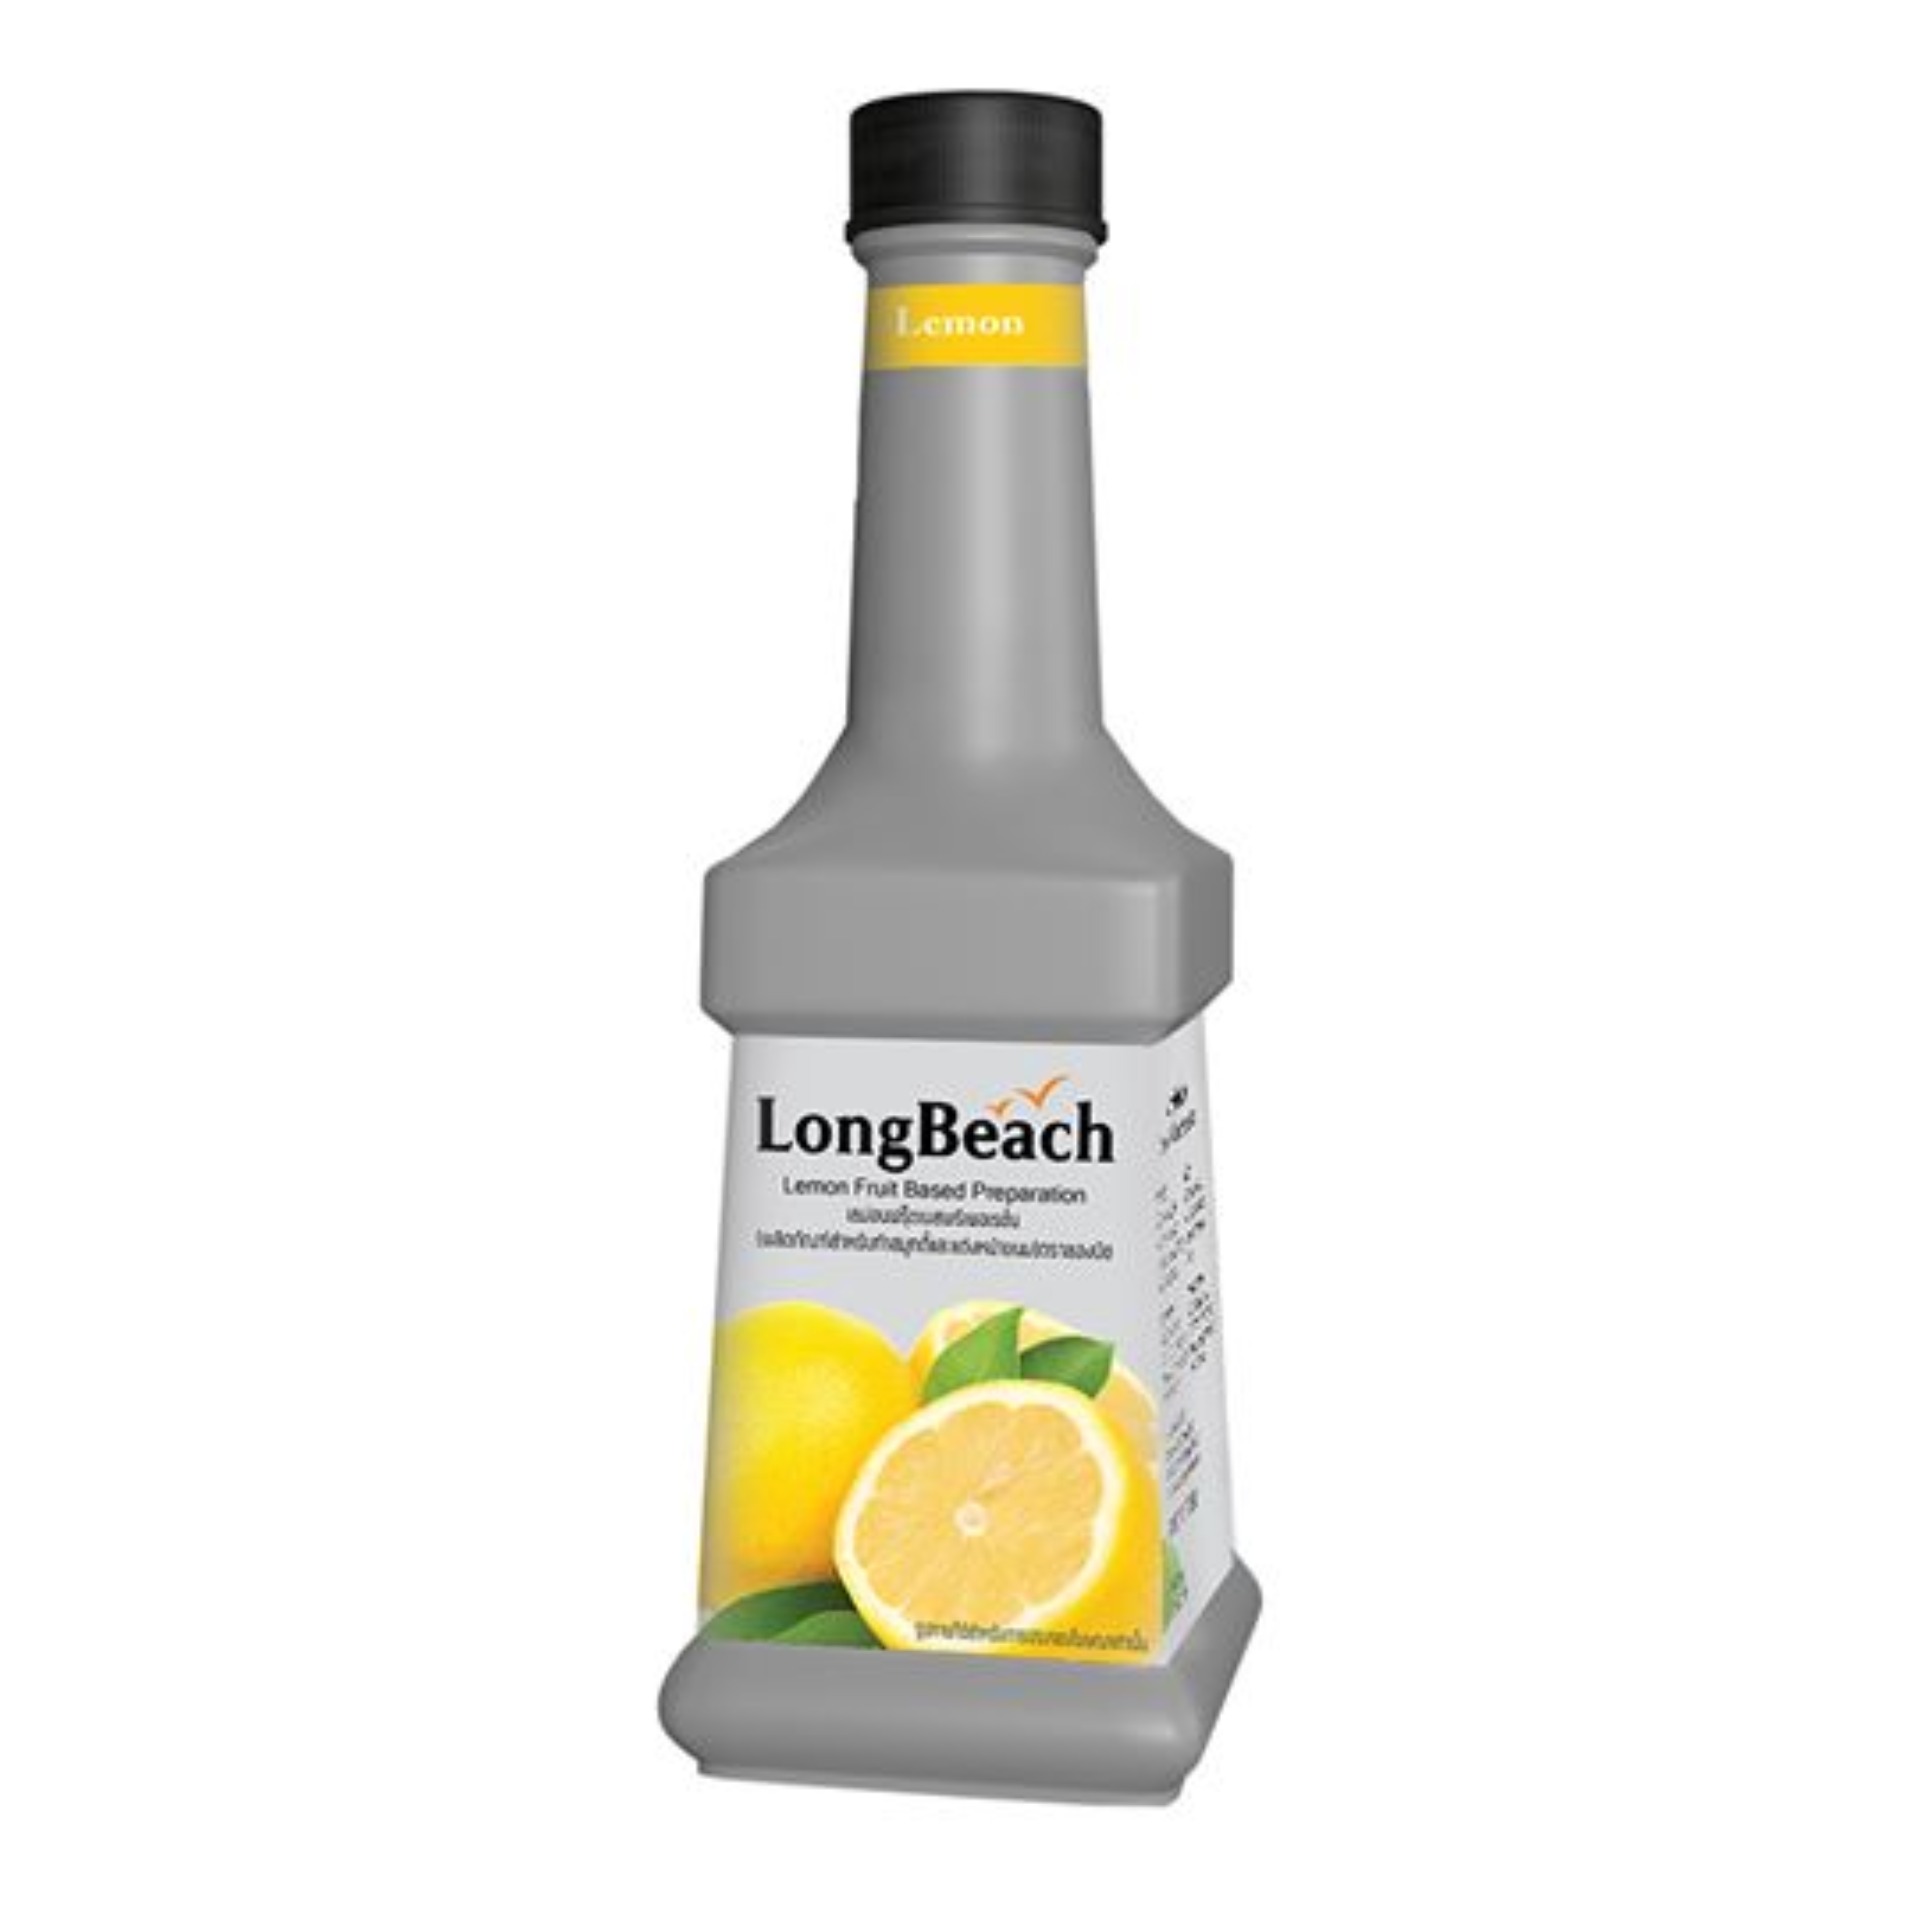 ลองบีชเพียวเร่เลม่อน ขนาด 900 มล. LongBeach Lemon Puree 900 ml.